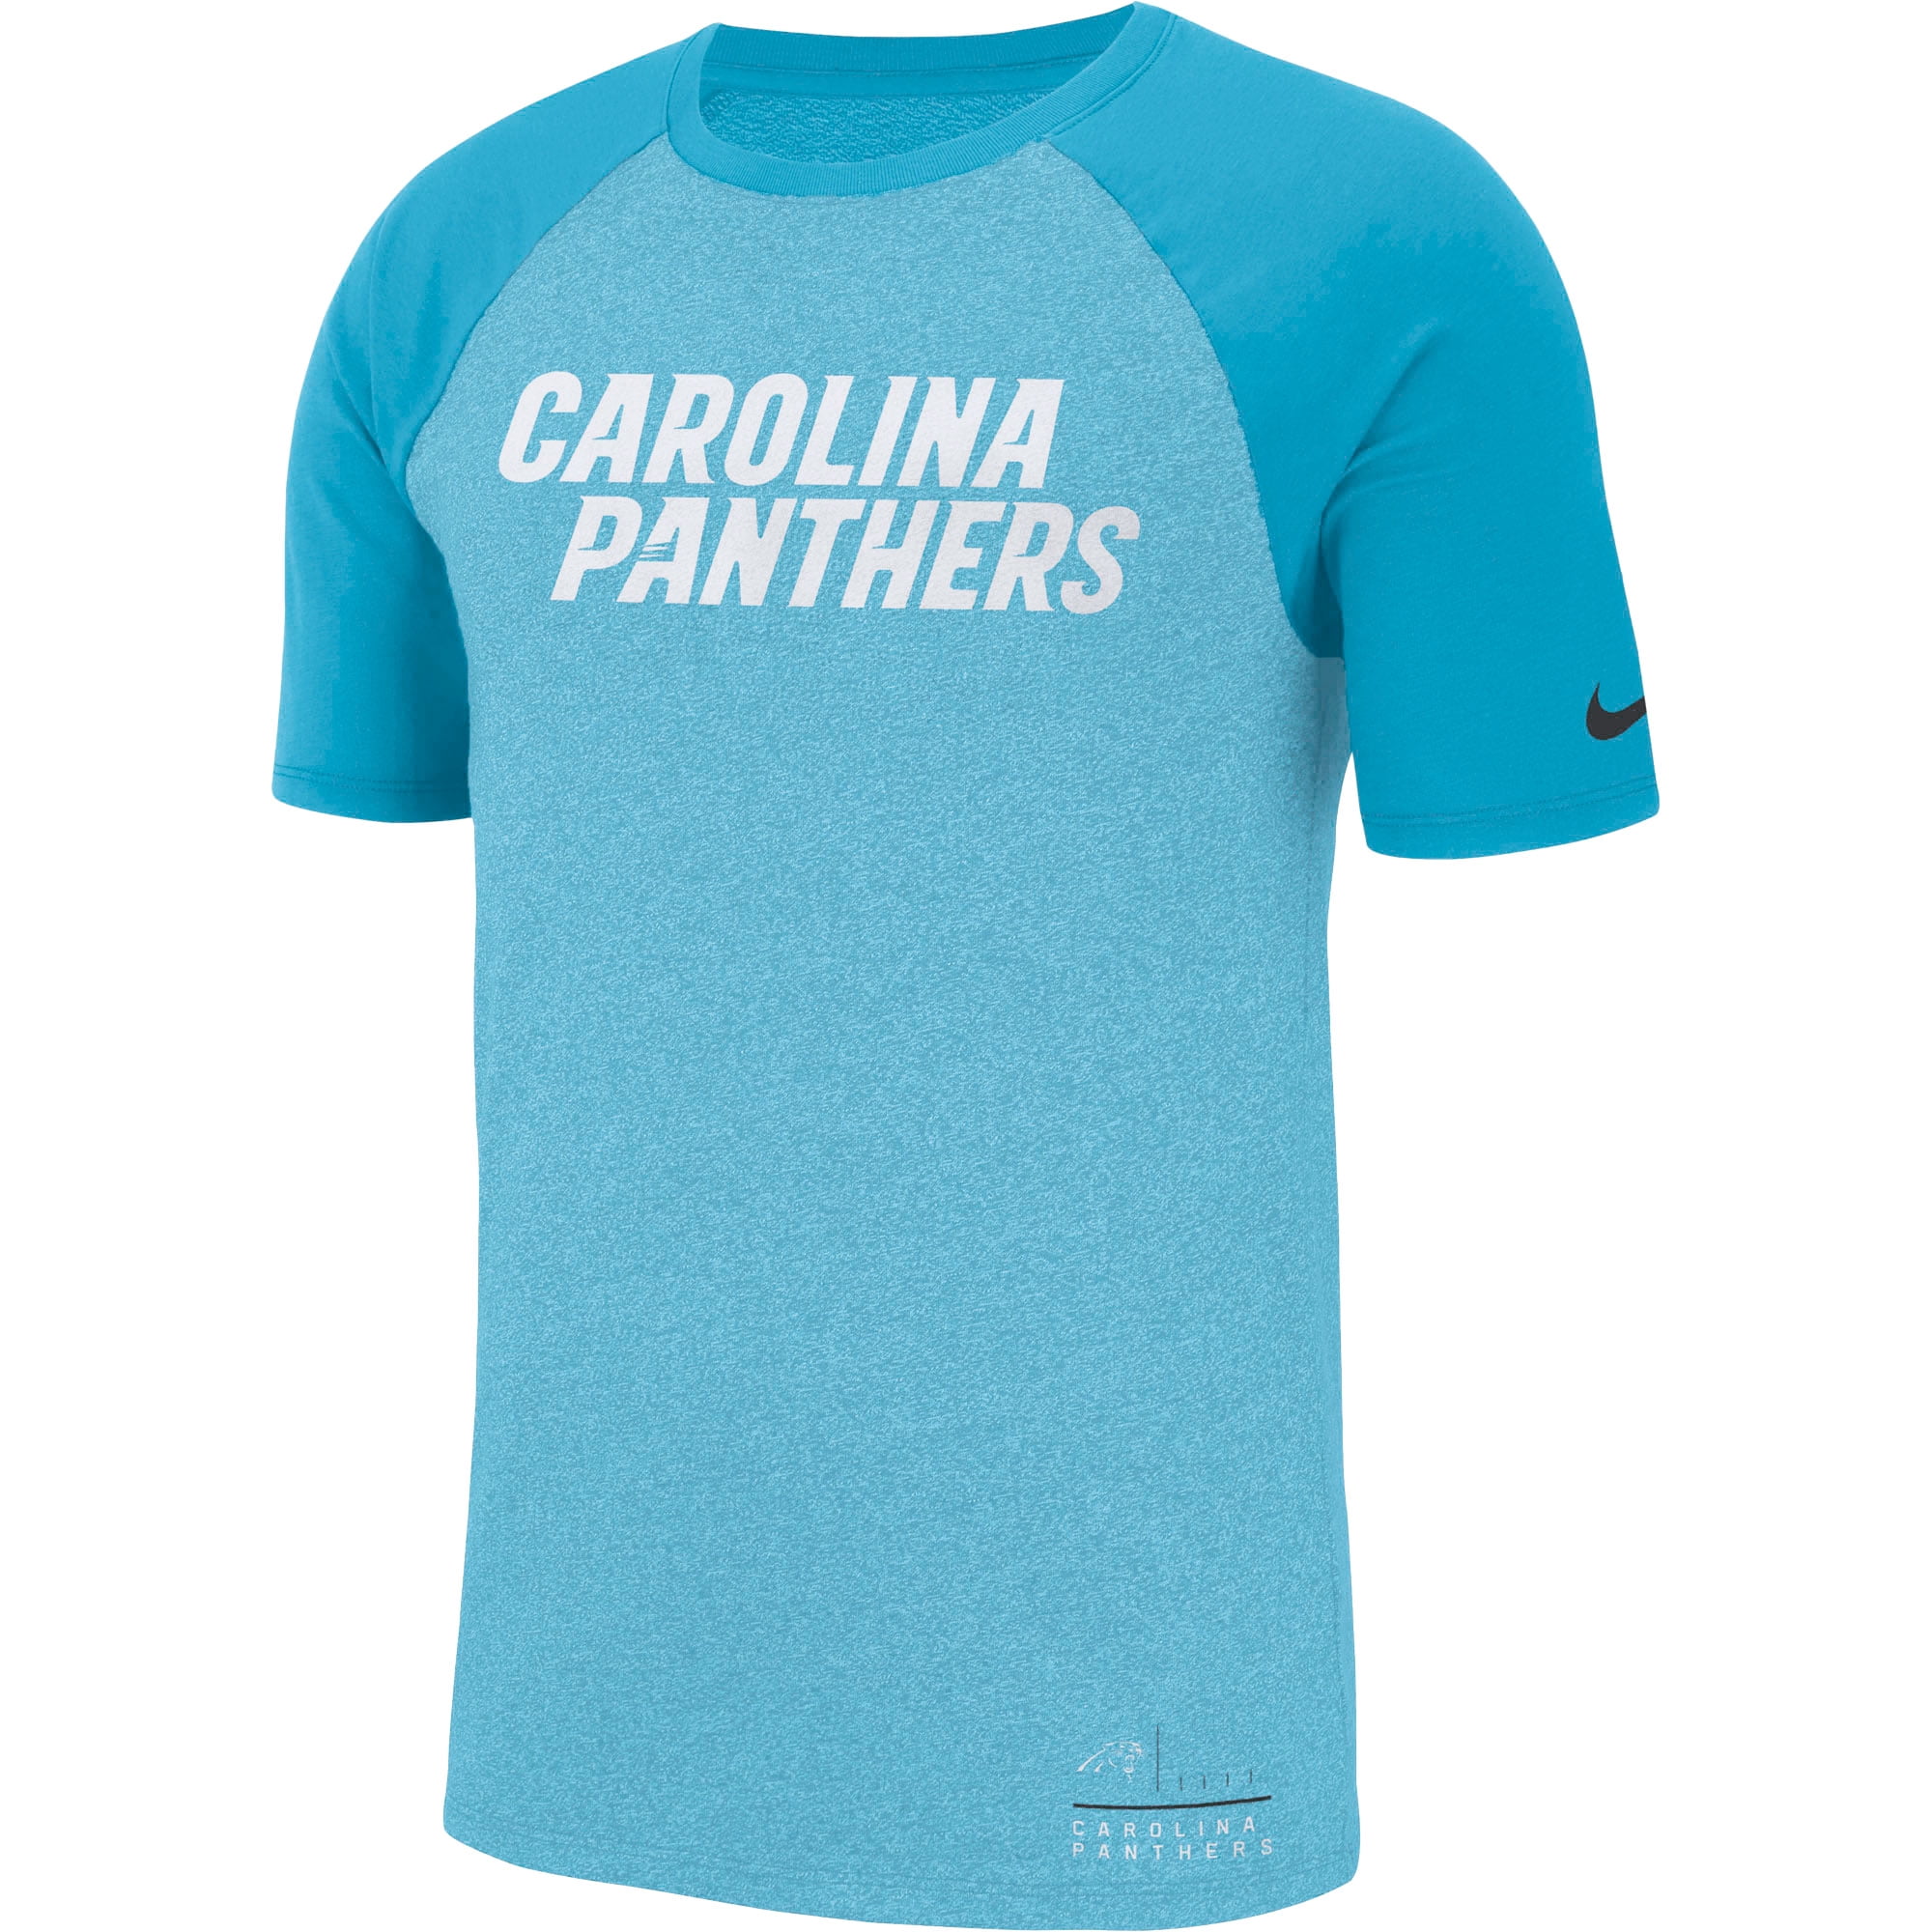 carolina panthers performance shirt